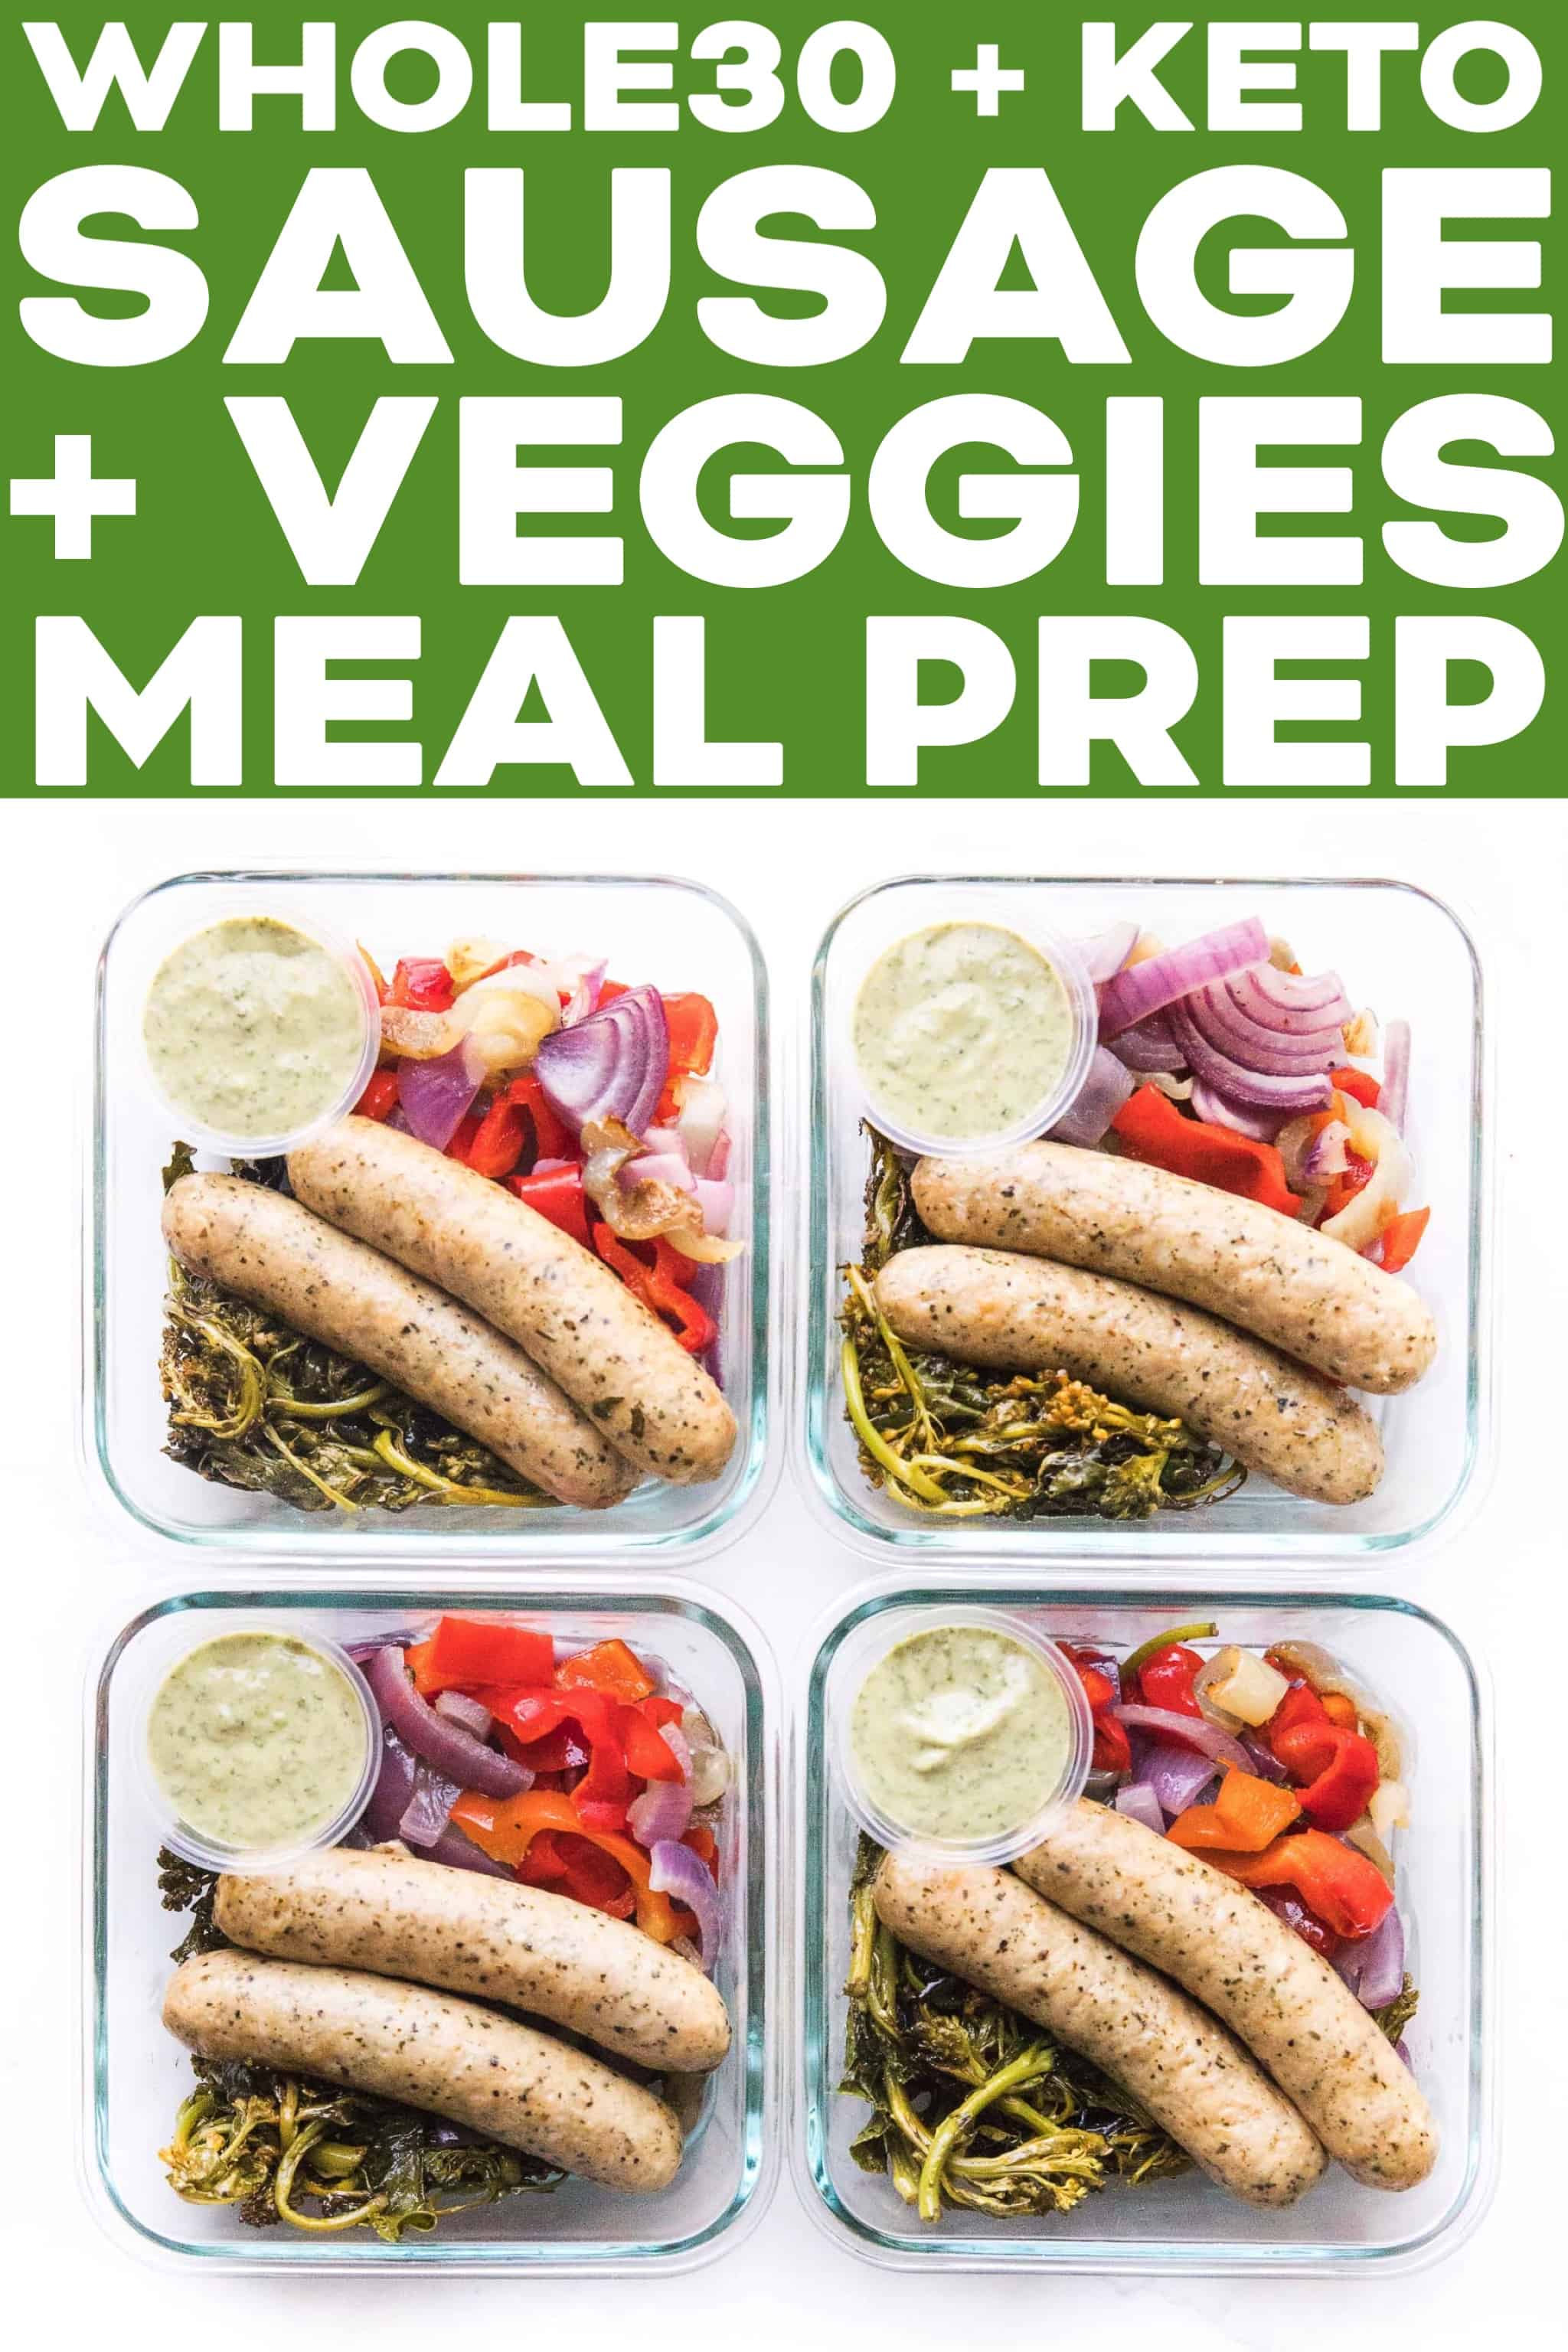 https://www.tasteslovely.com/wp-content/uploads/2019/09/Whole30-Keto-Sheet-Sausage-Vegetables-Meal-Prep-1.jpg